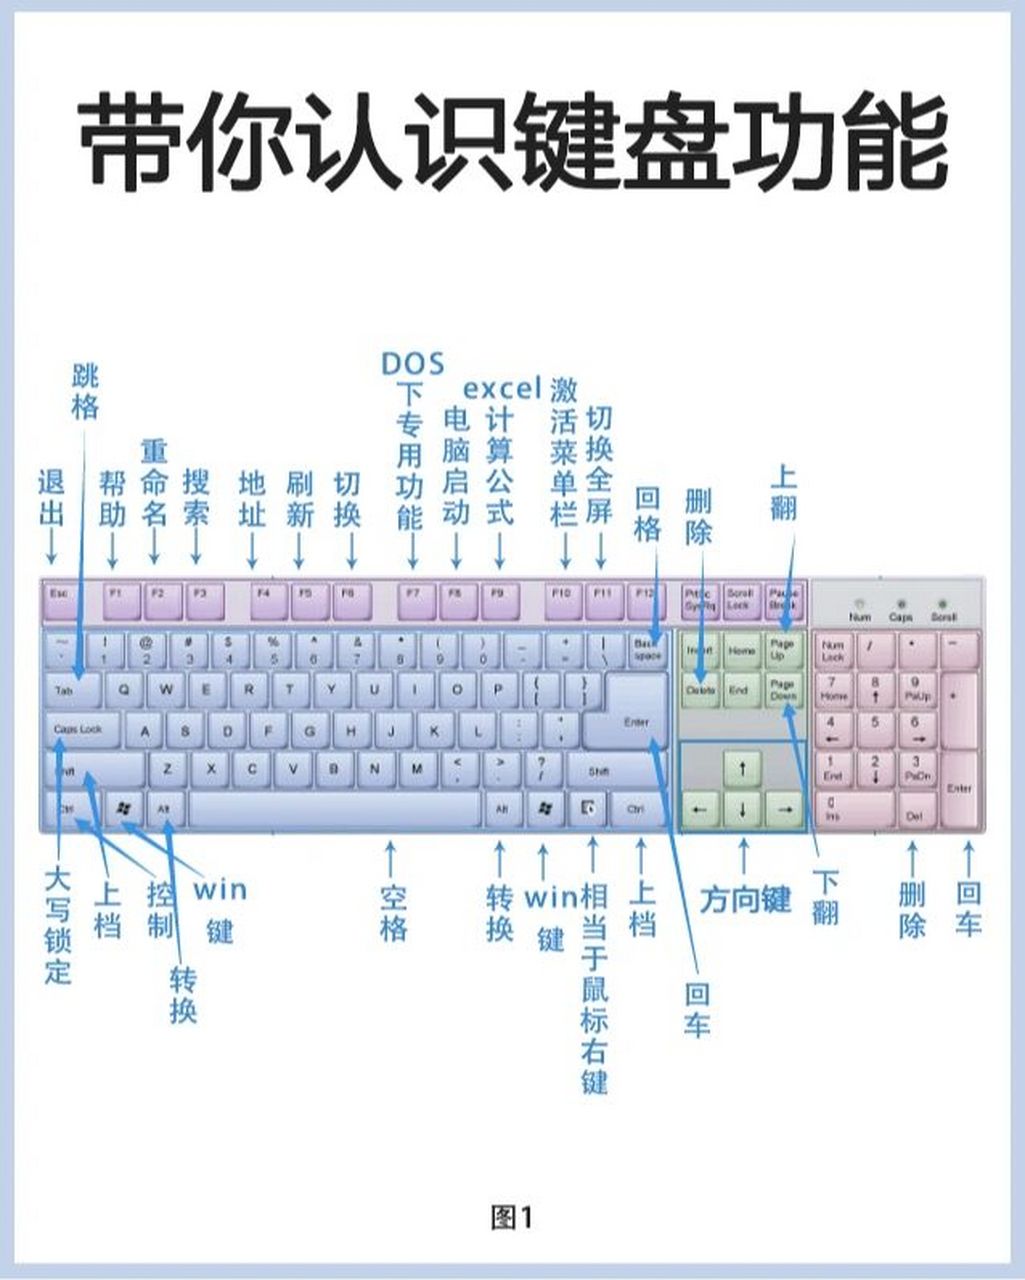 108键盘图 示意图图片